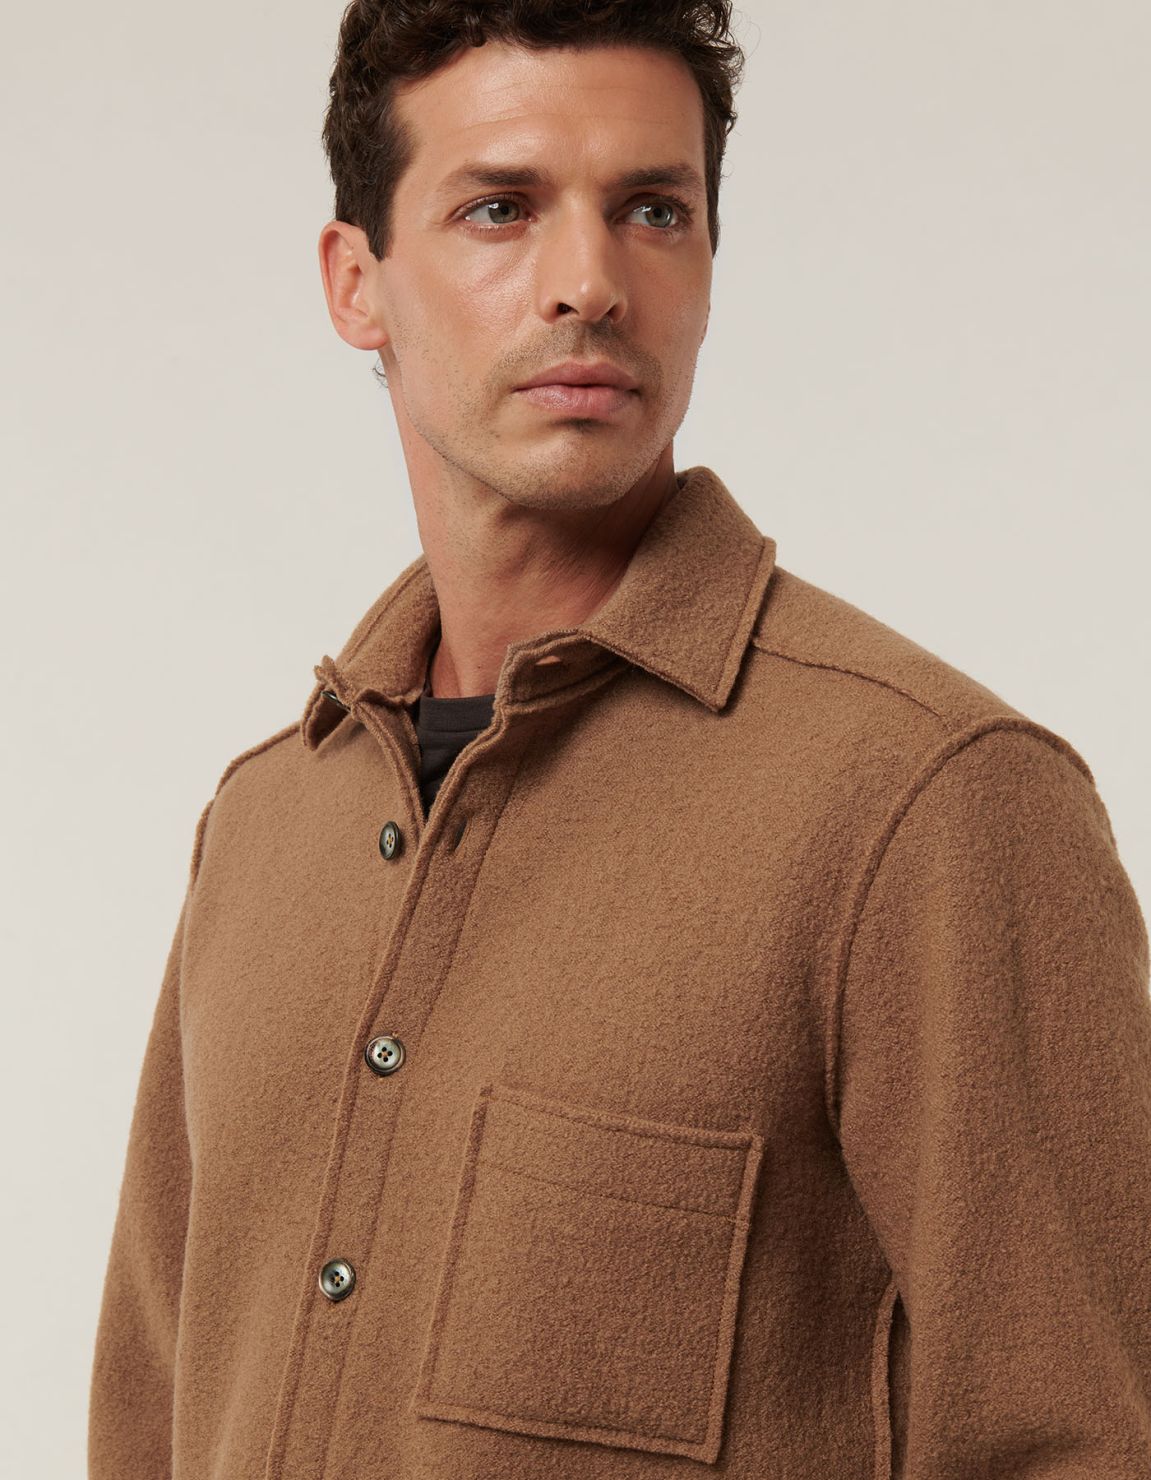 Camel Woven Solid colour Shirt Collar spread Over 6